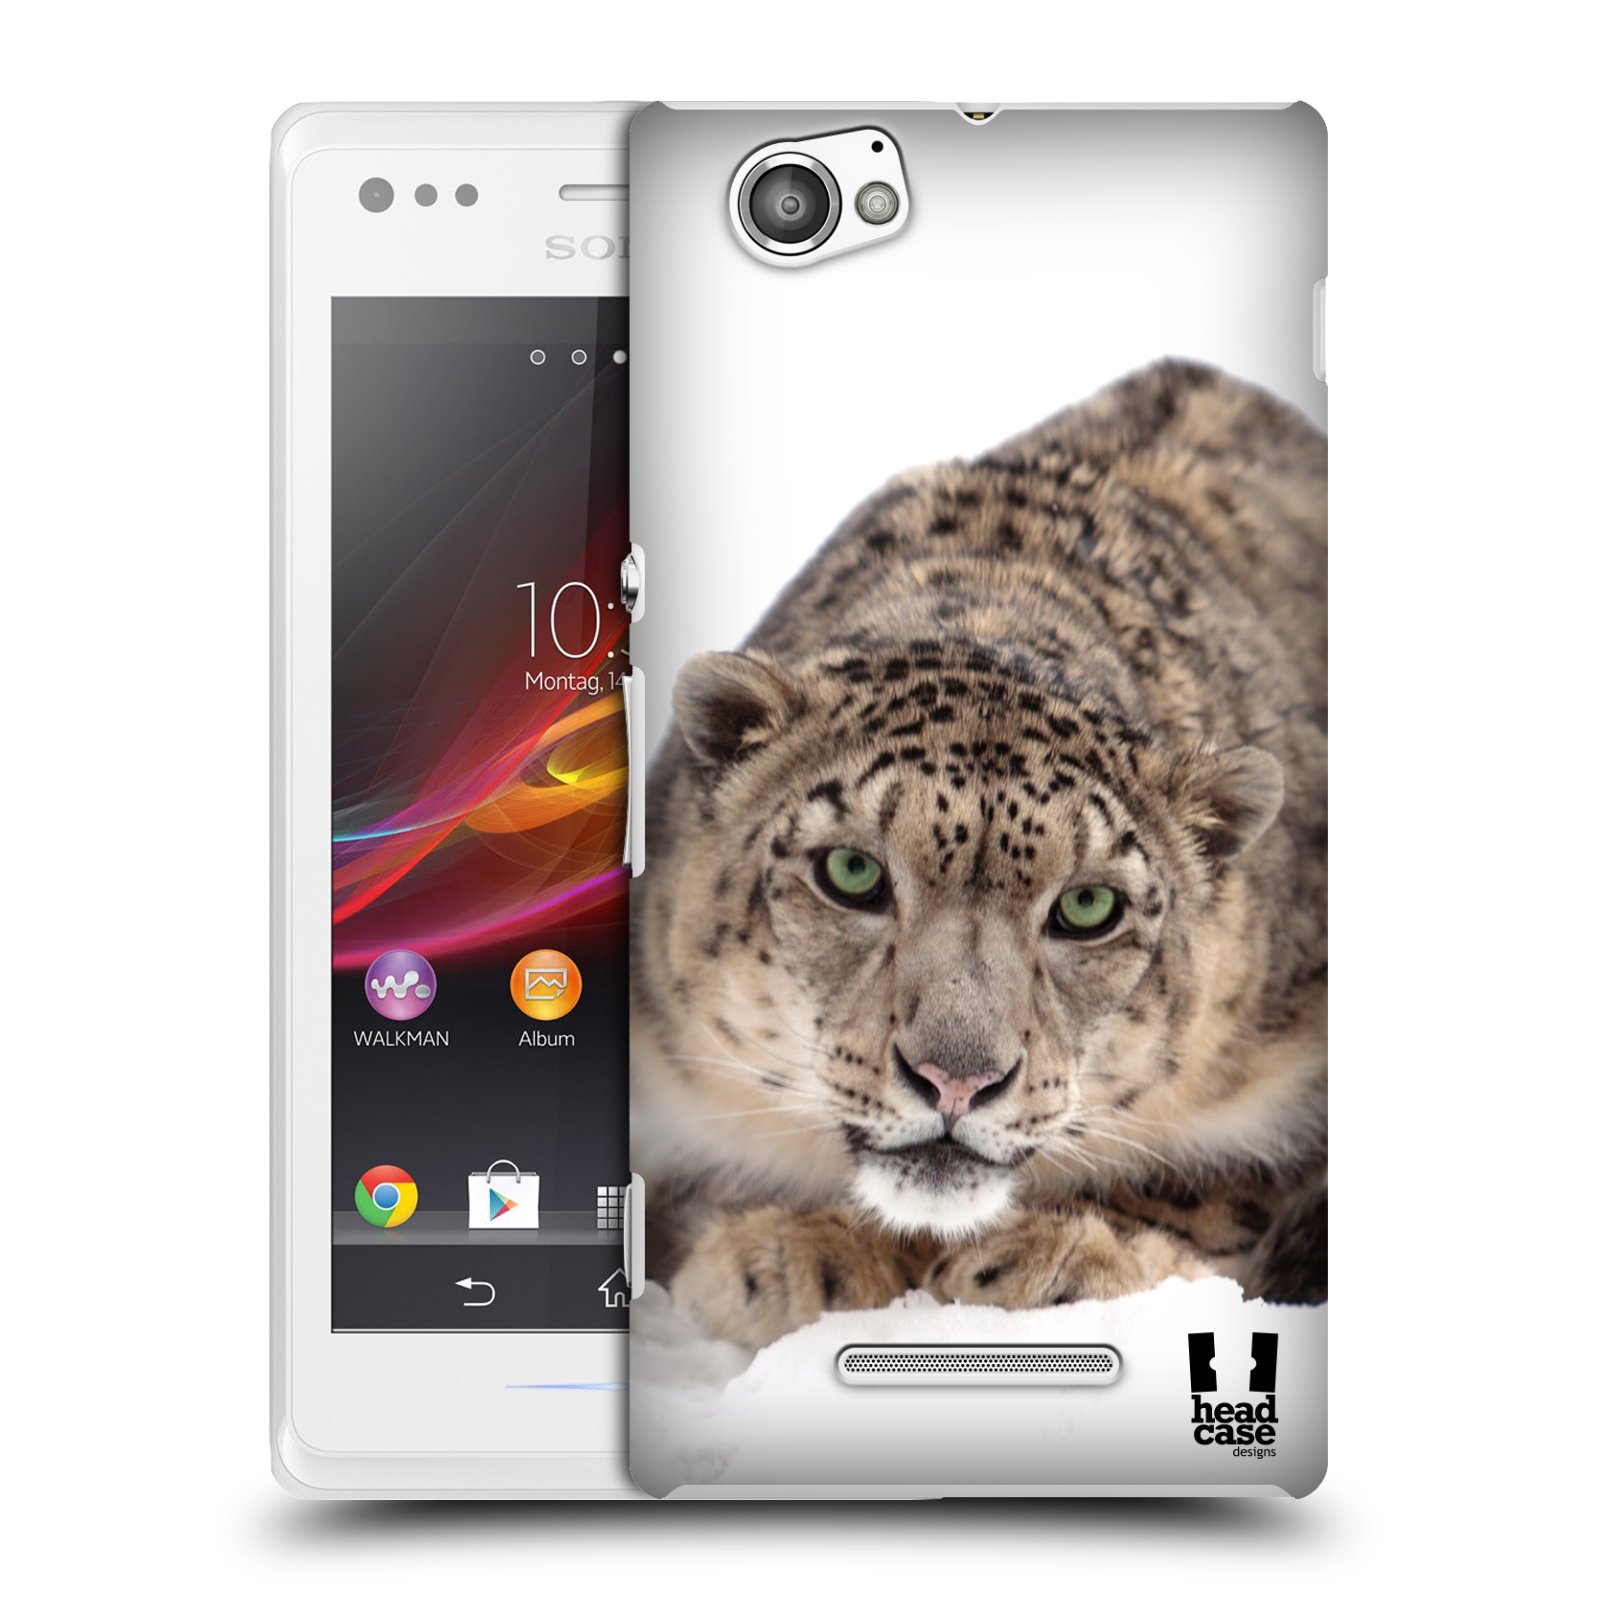 HEAD CASE plastový obal na mobil Sony Xperia M vzor Divočina, Divoký život a zvířata foto SNĚŽNÝ LEOPARD